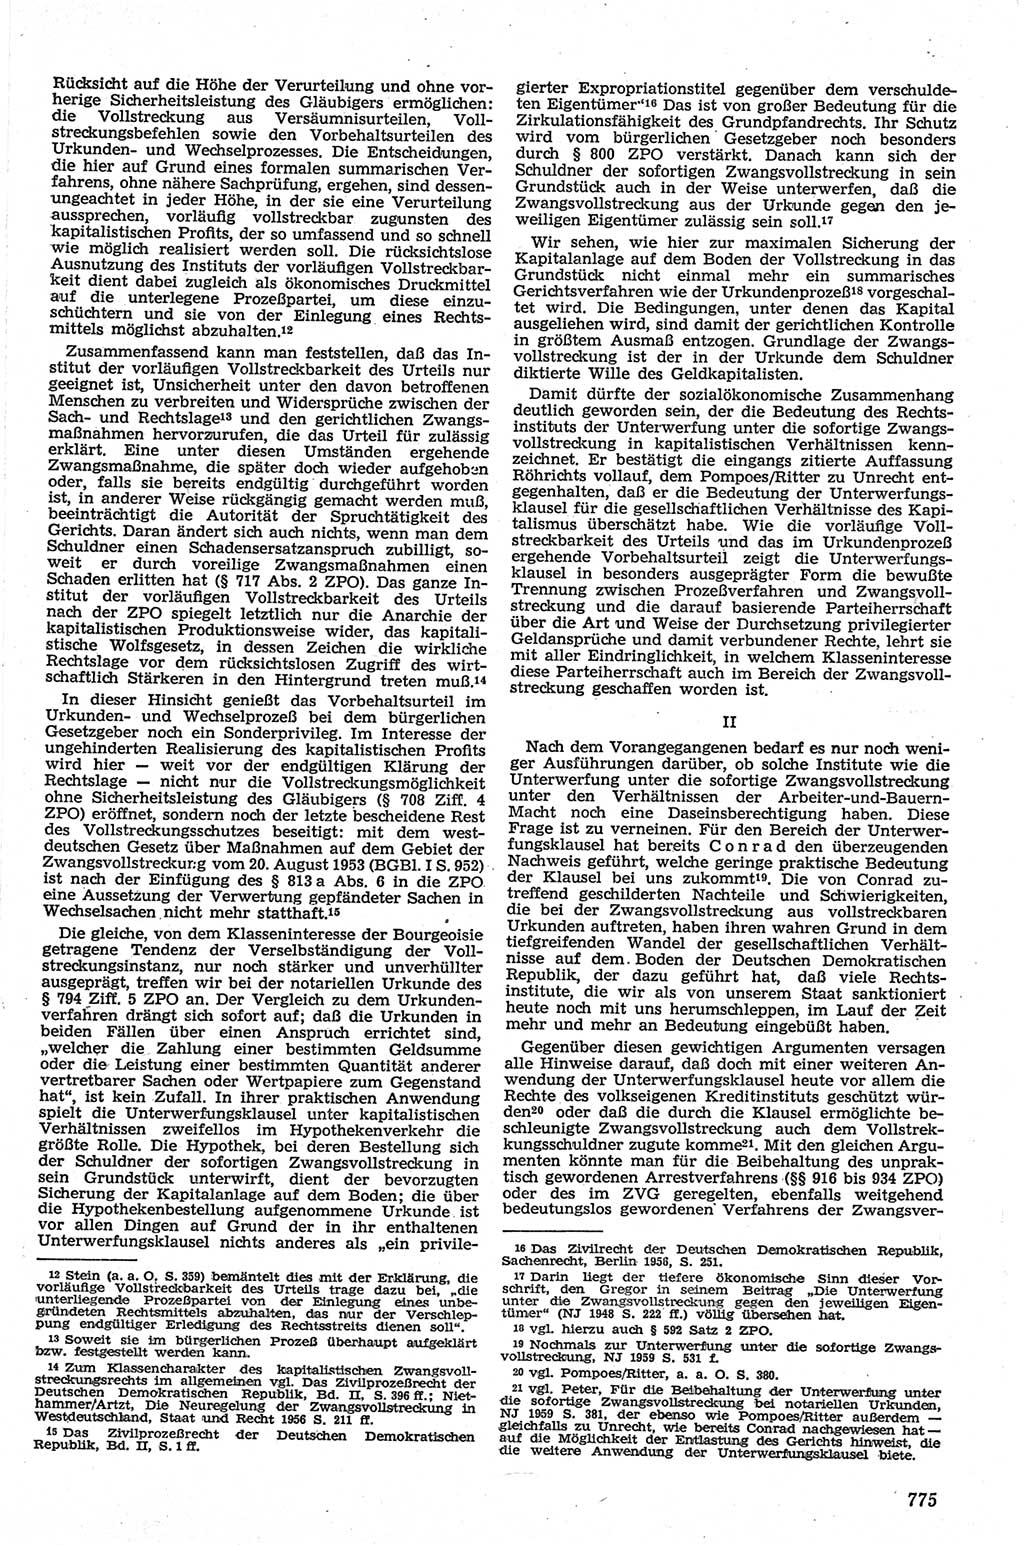 Neue Justiz (NJ), Zeitschrift für Recht und Rechtswissenschaft [Deutsche Demokratische Republik (DDR)], 13. Jahrgang 1959, Seite 775 (NJ DDR 1959, S. 775)